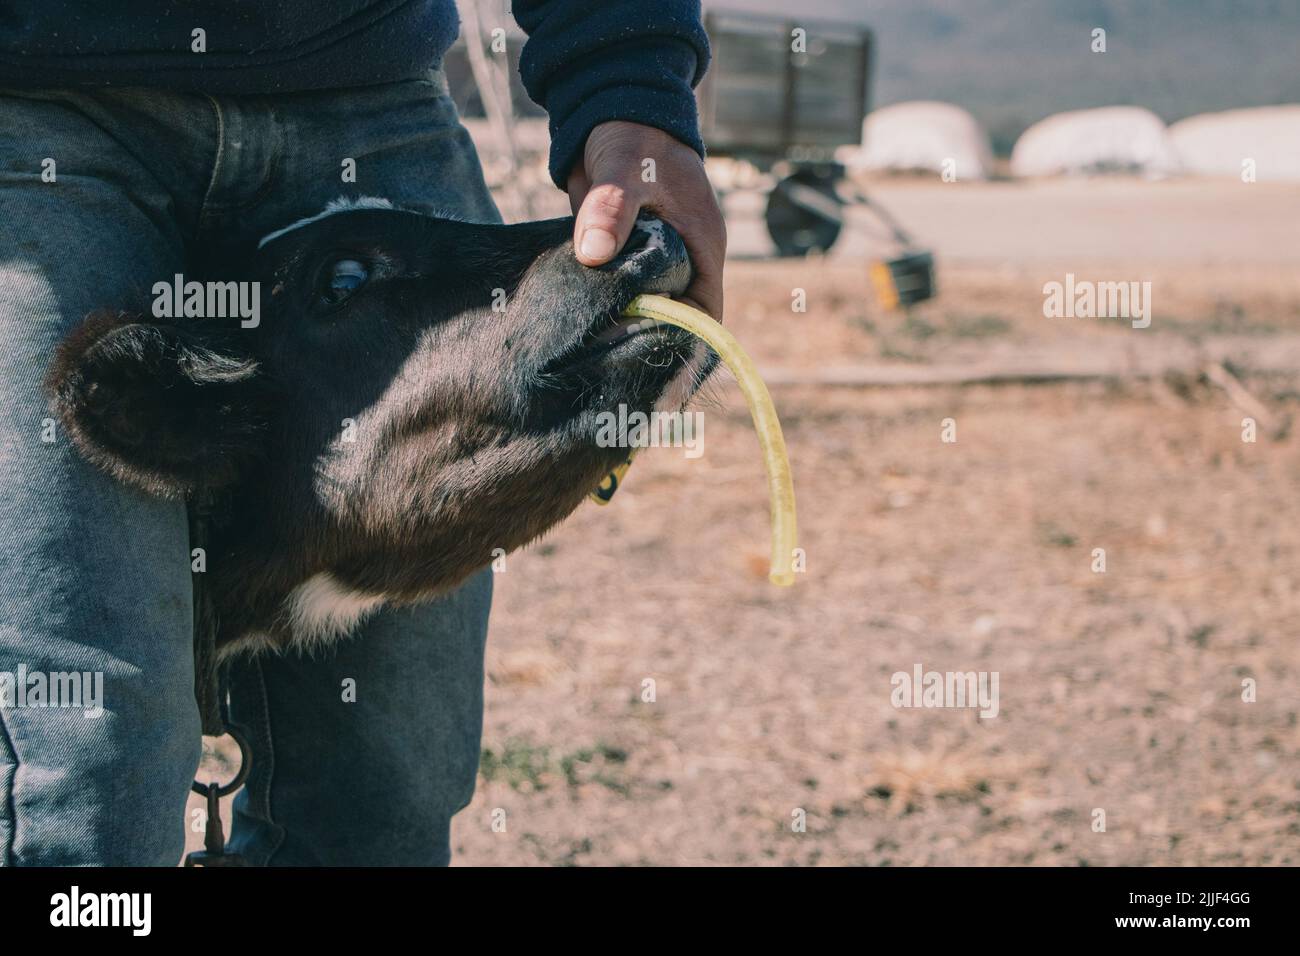 Farmworker traite un veau souffrant de tympania (ballonnement). Cette  laiterie est située à la périphérie de Salta, en Argentine, et compte  environ 800 vaches. Les vaches femelles sont inséminées artificiellement  pour la